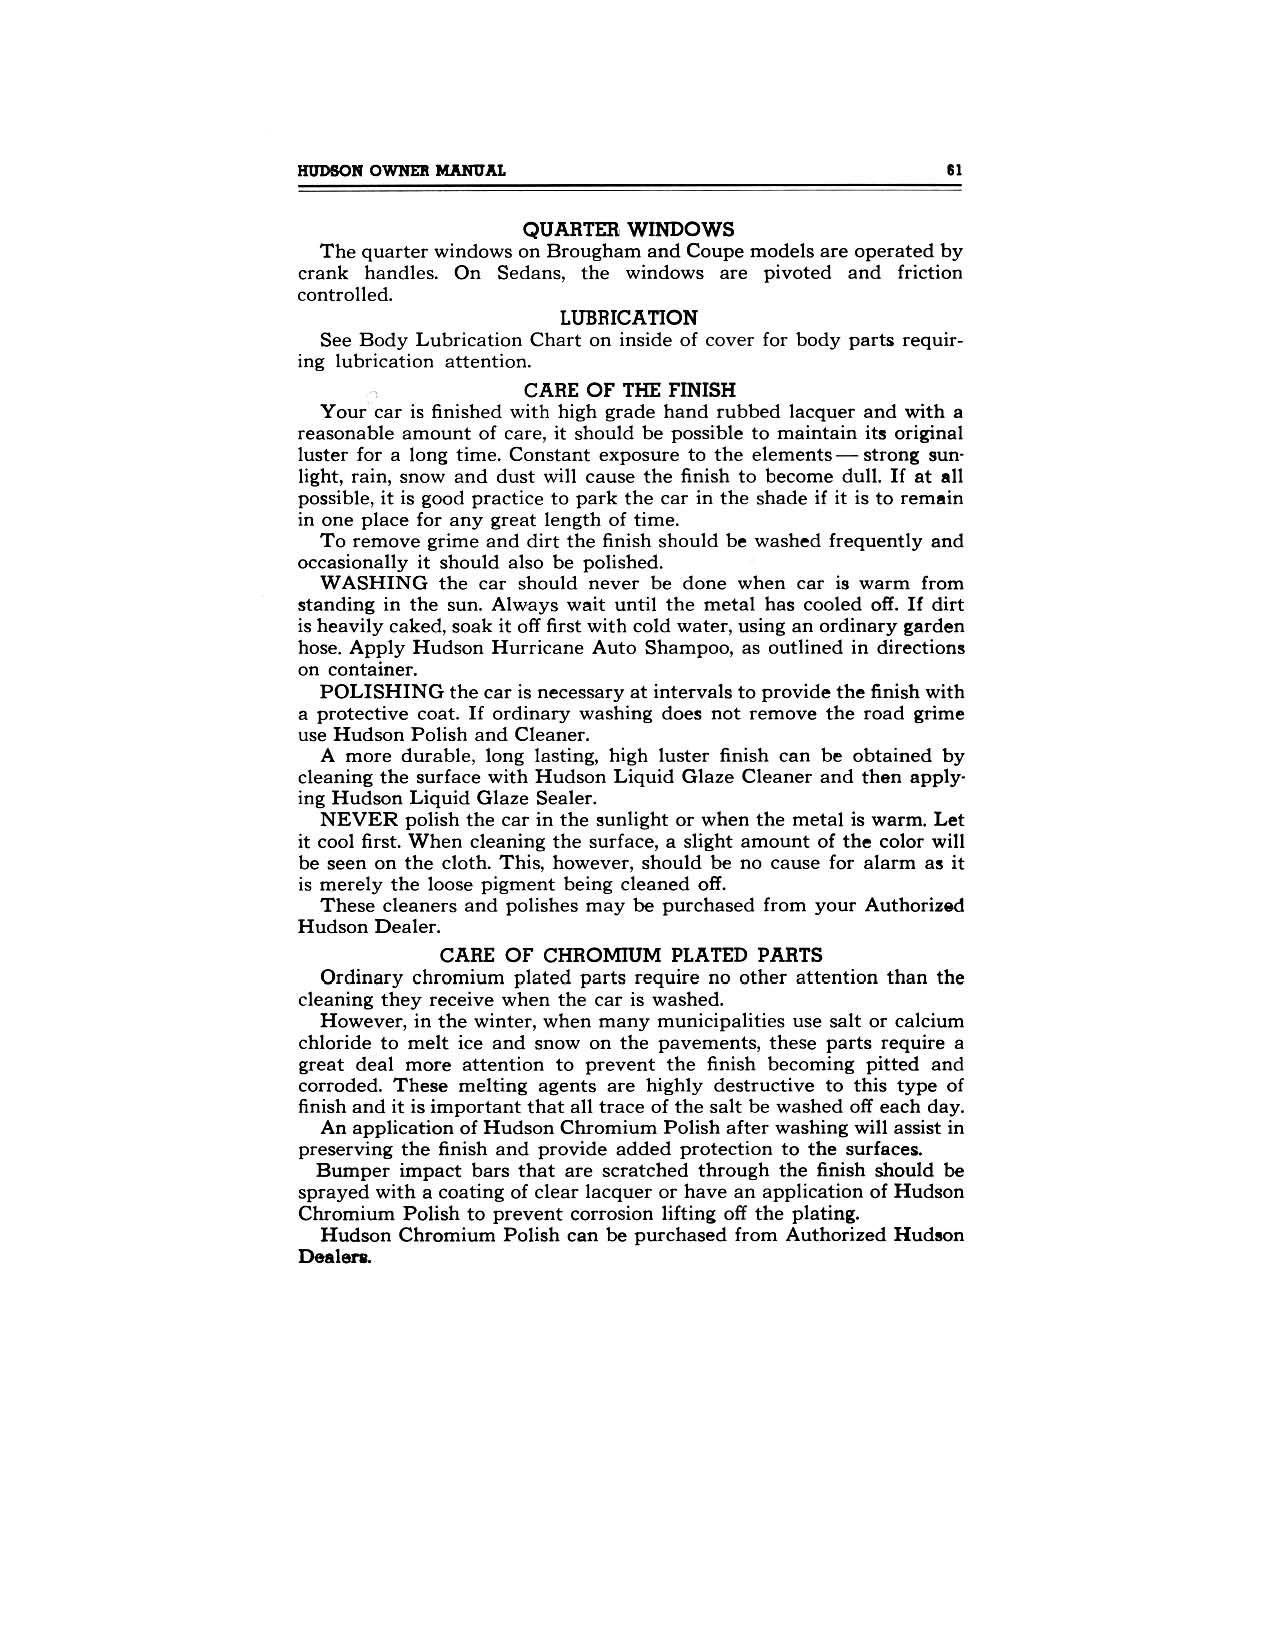 1949 Hudson Owners Manual-63